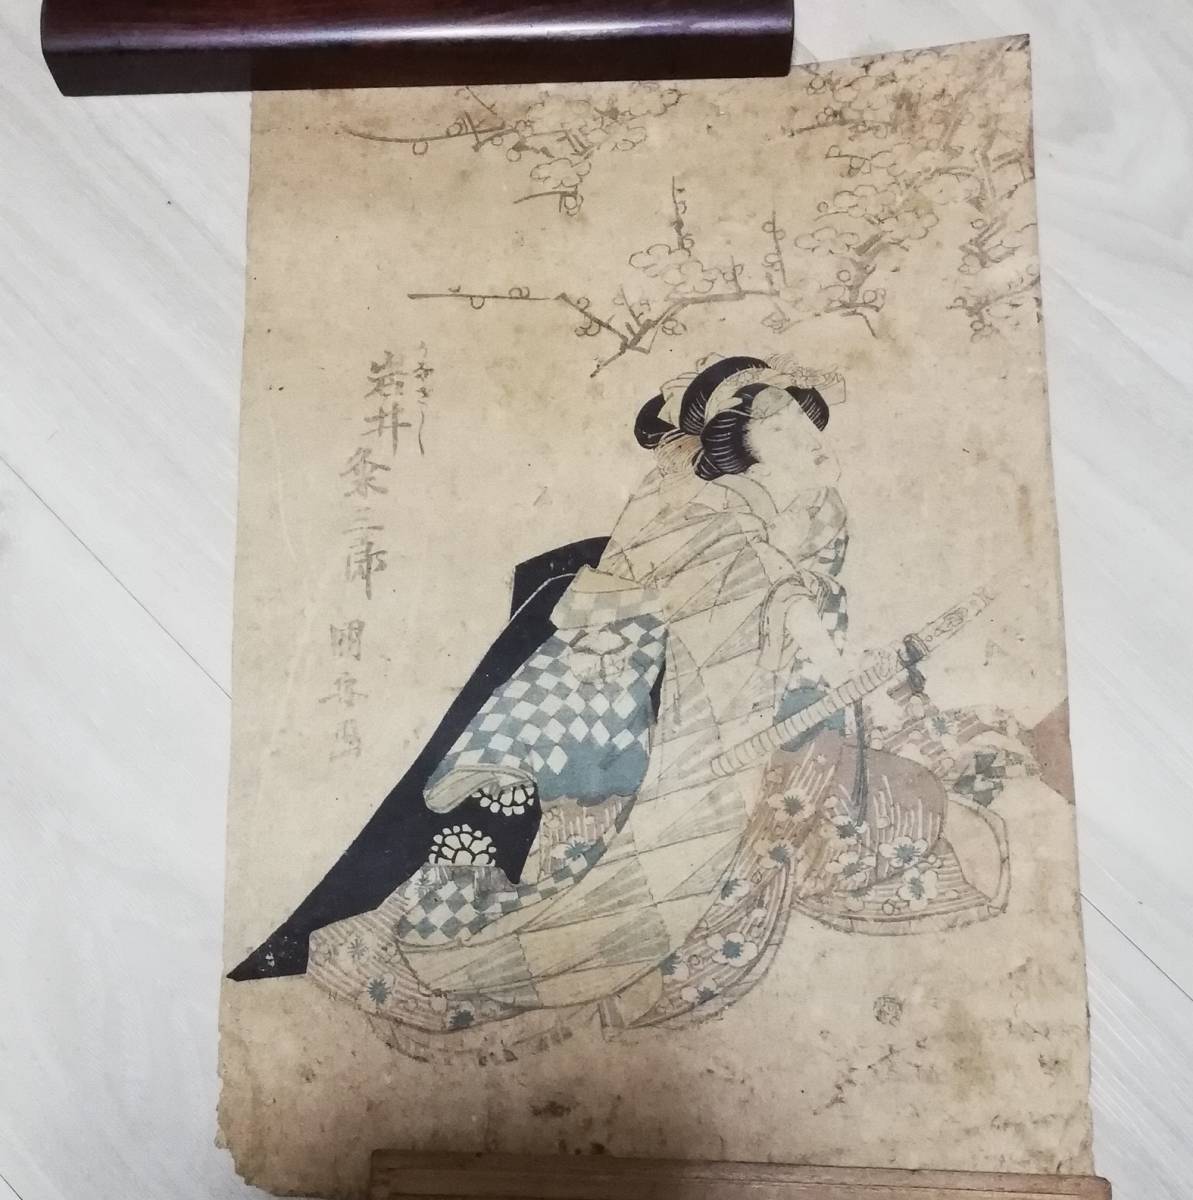 Grabado en madera Arte antiguo Genuino Kesaburo Iwai Ukiyo-e (Kuniyoshi, yoshitoshi, Kunisada, Kunichika, Toyokuni, Kyosai), cuadro, Ukiyo-e, imprimir, Hermosa mujer pintando